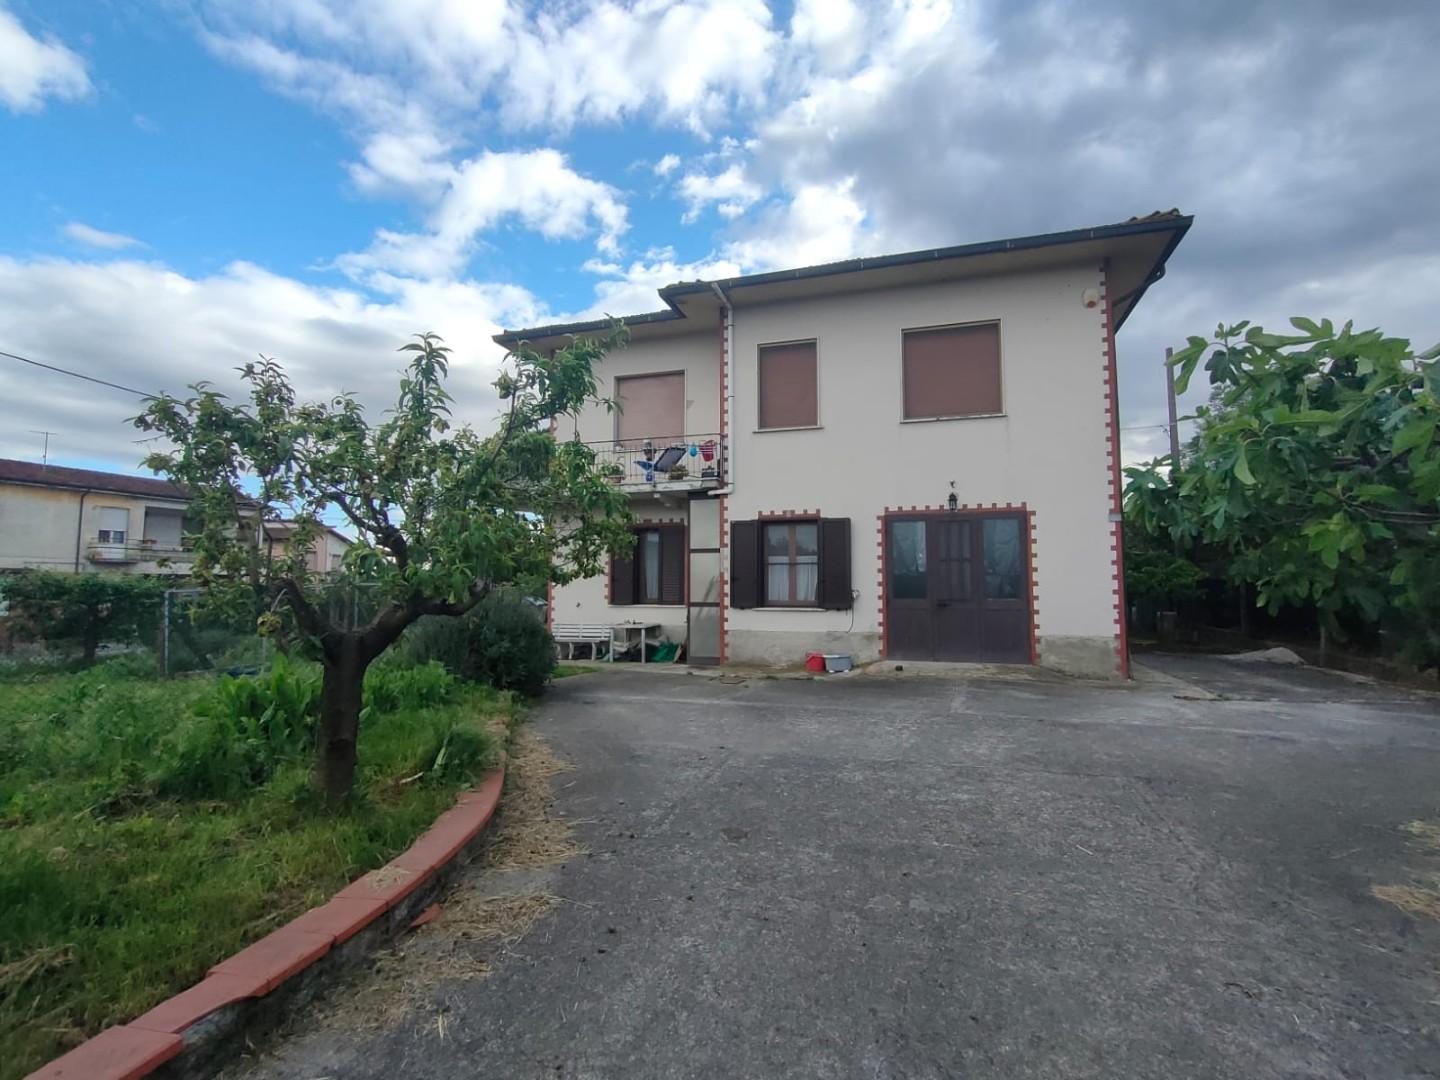 Villa Bifamiliare in vendita a Altopascio, 10 locali, prezzo € 270.000 | PortaleAgenzieImmobiliari.it